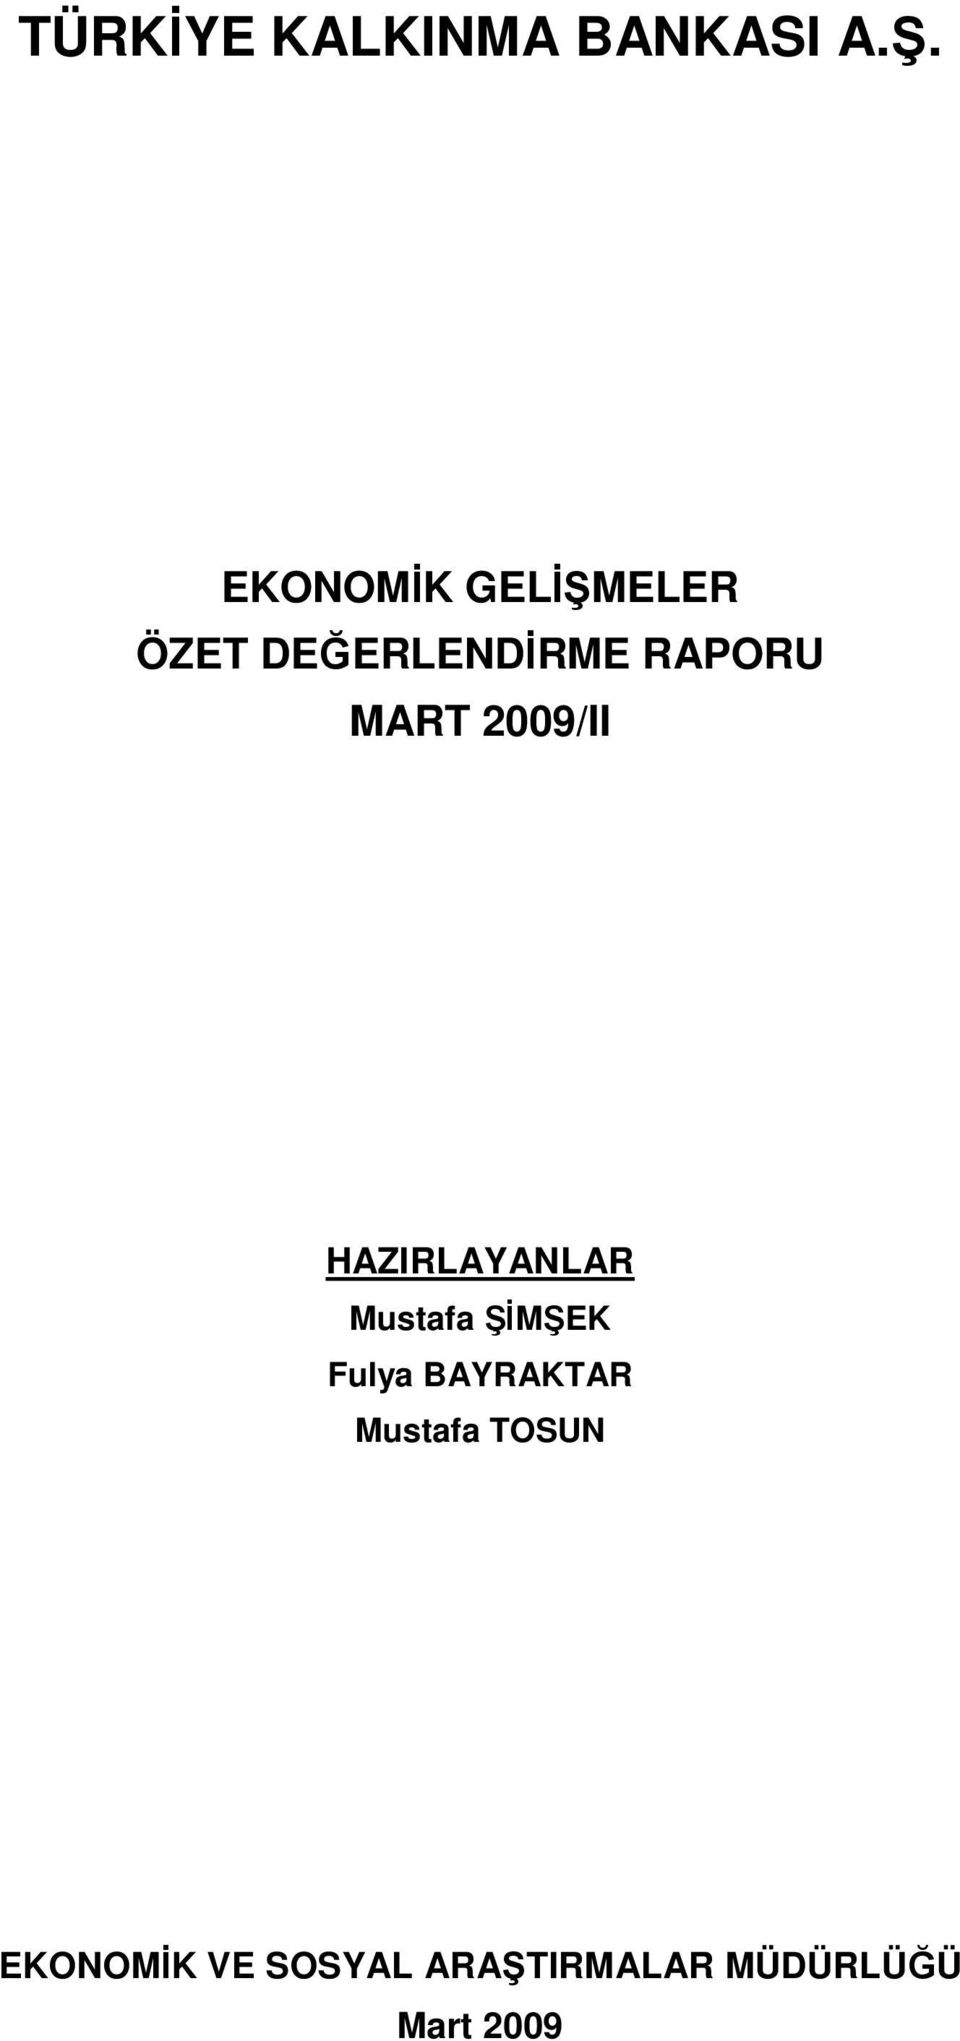 MART 2009/II HAZIRLAYANLAR Mustafa ŞİMŞEK Fulya